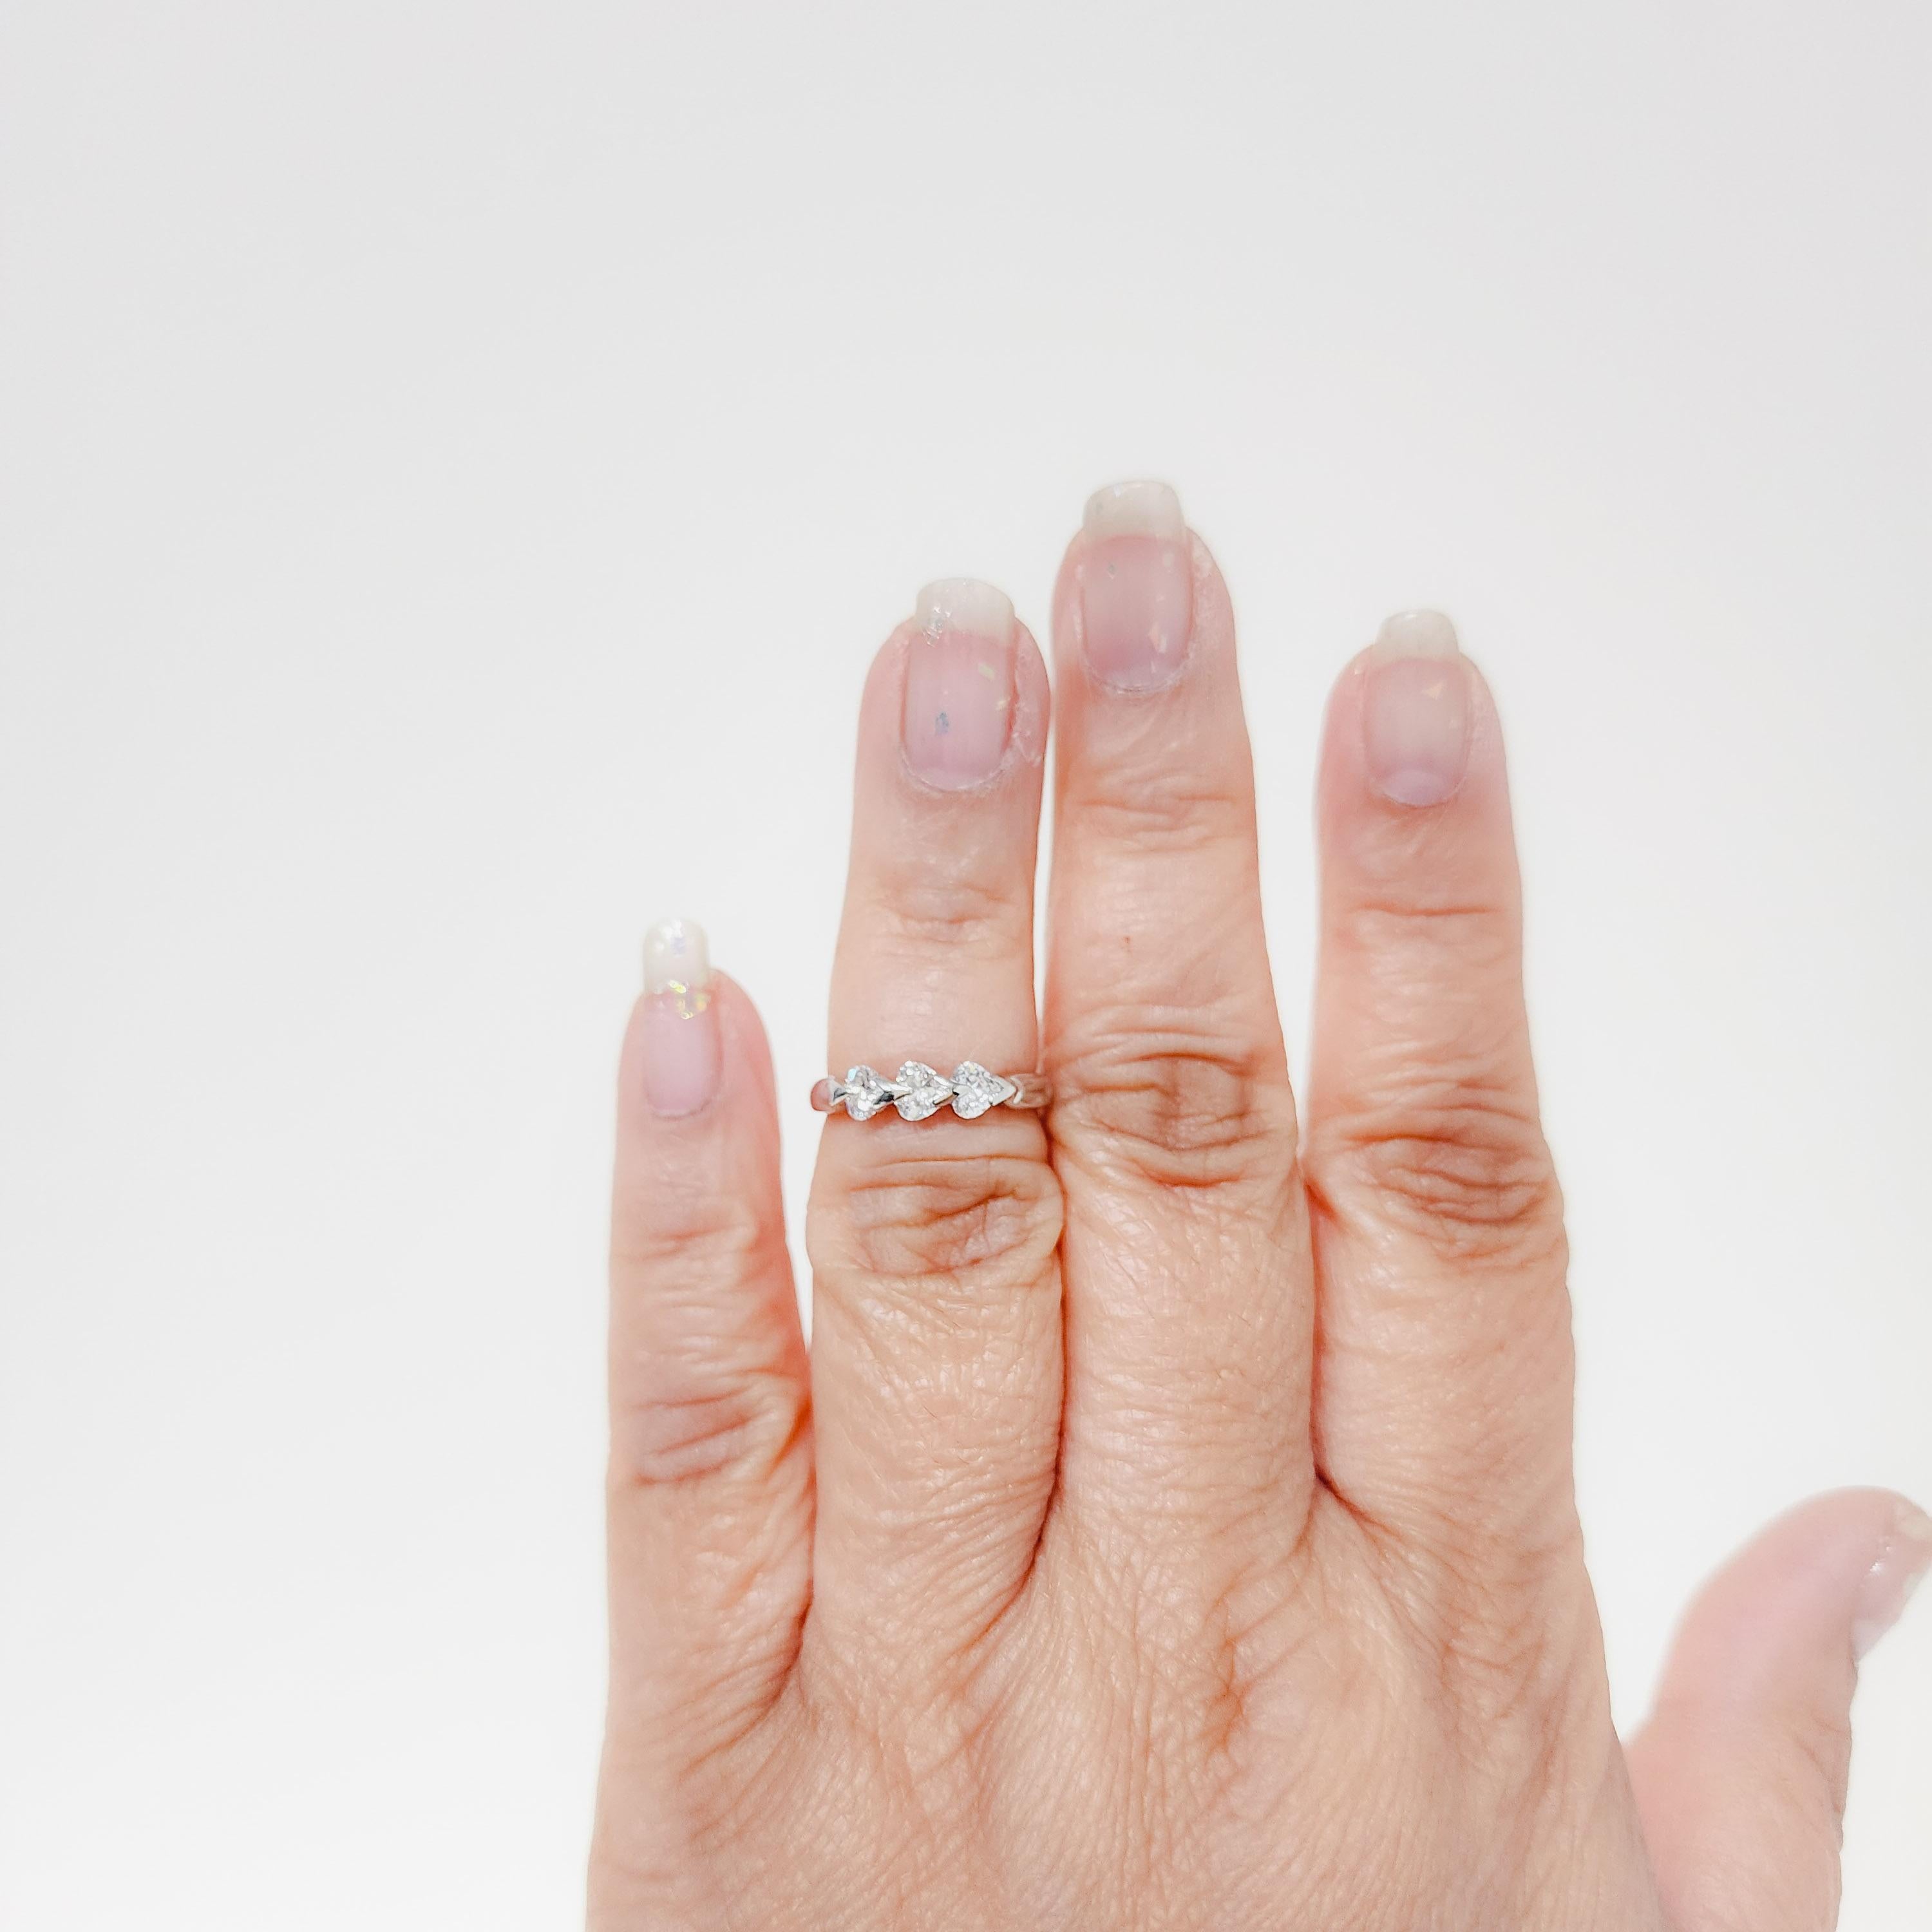 Wunderschöne 0,61 ct. weiße Diamanten in Herzform (insgesamt 3) in einer handgefertigten Platinfassung.  Ringgröße 5,75.